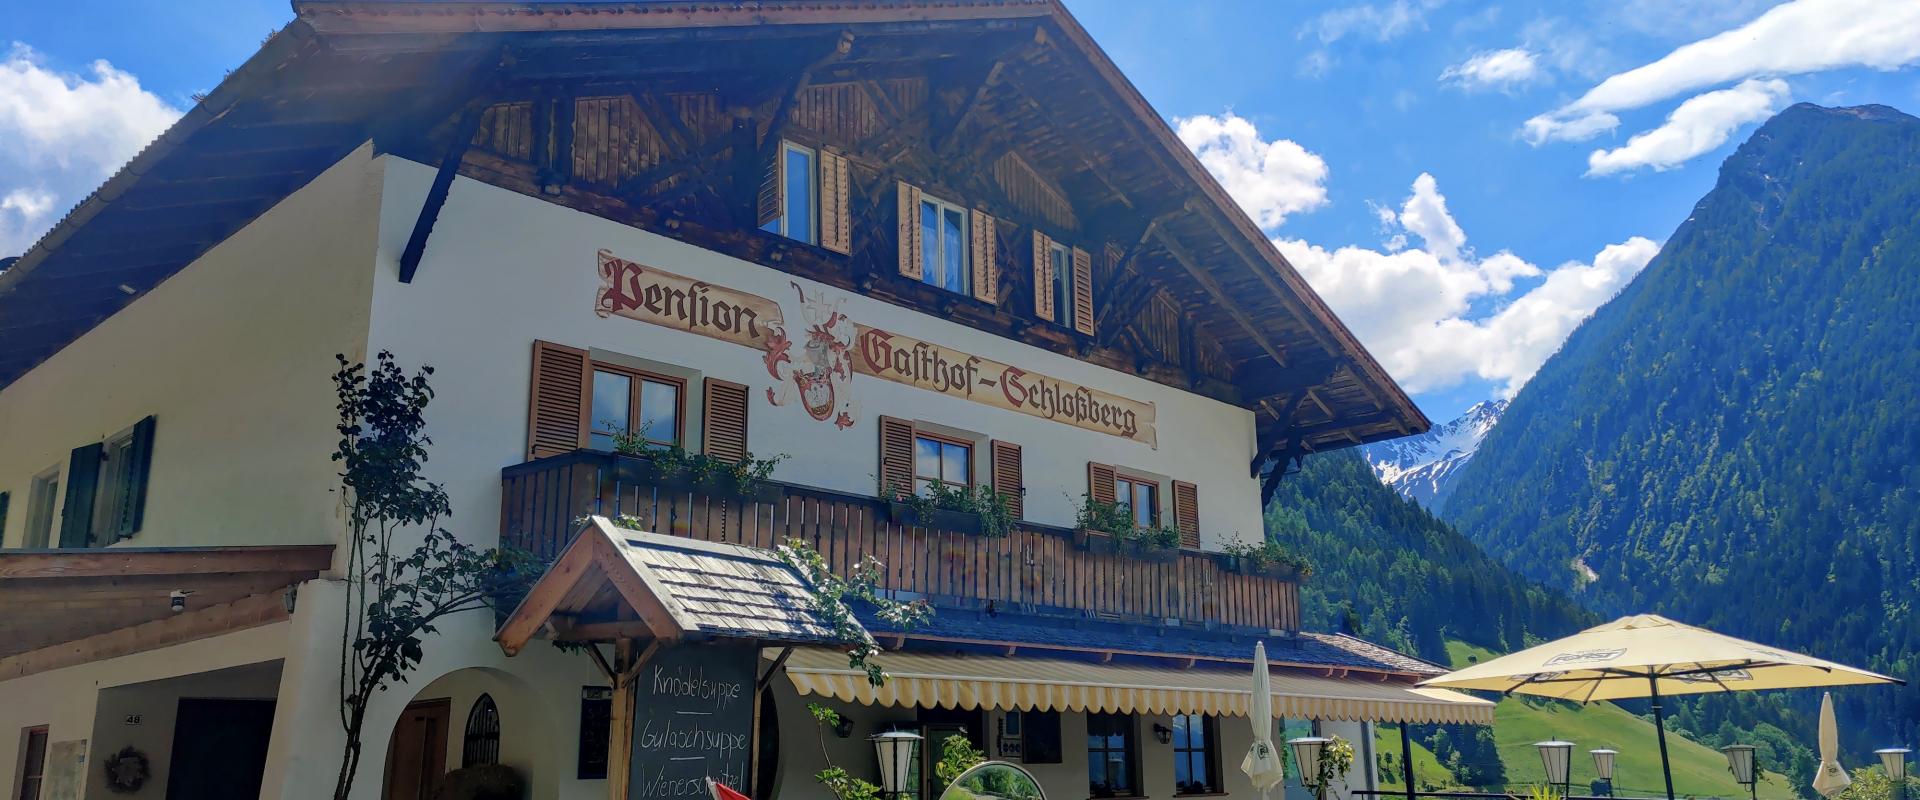 15255 Biker Hotel Pension Schlossberg Südtirol Hausansicht.jpg